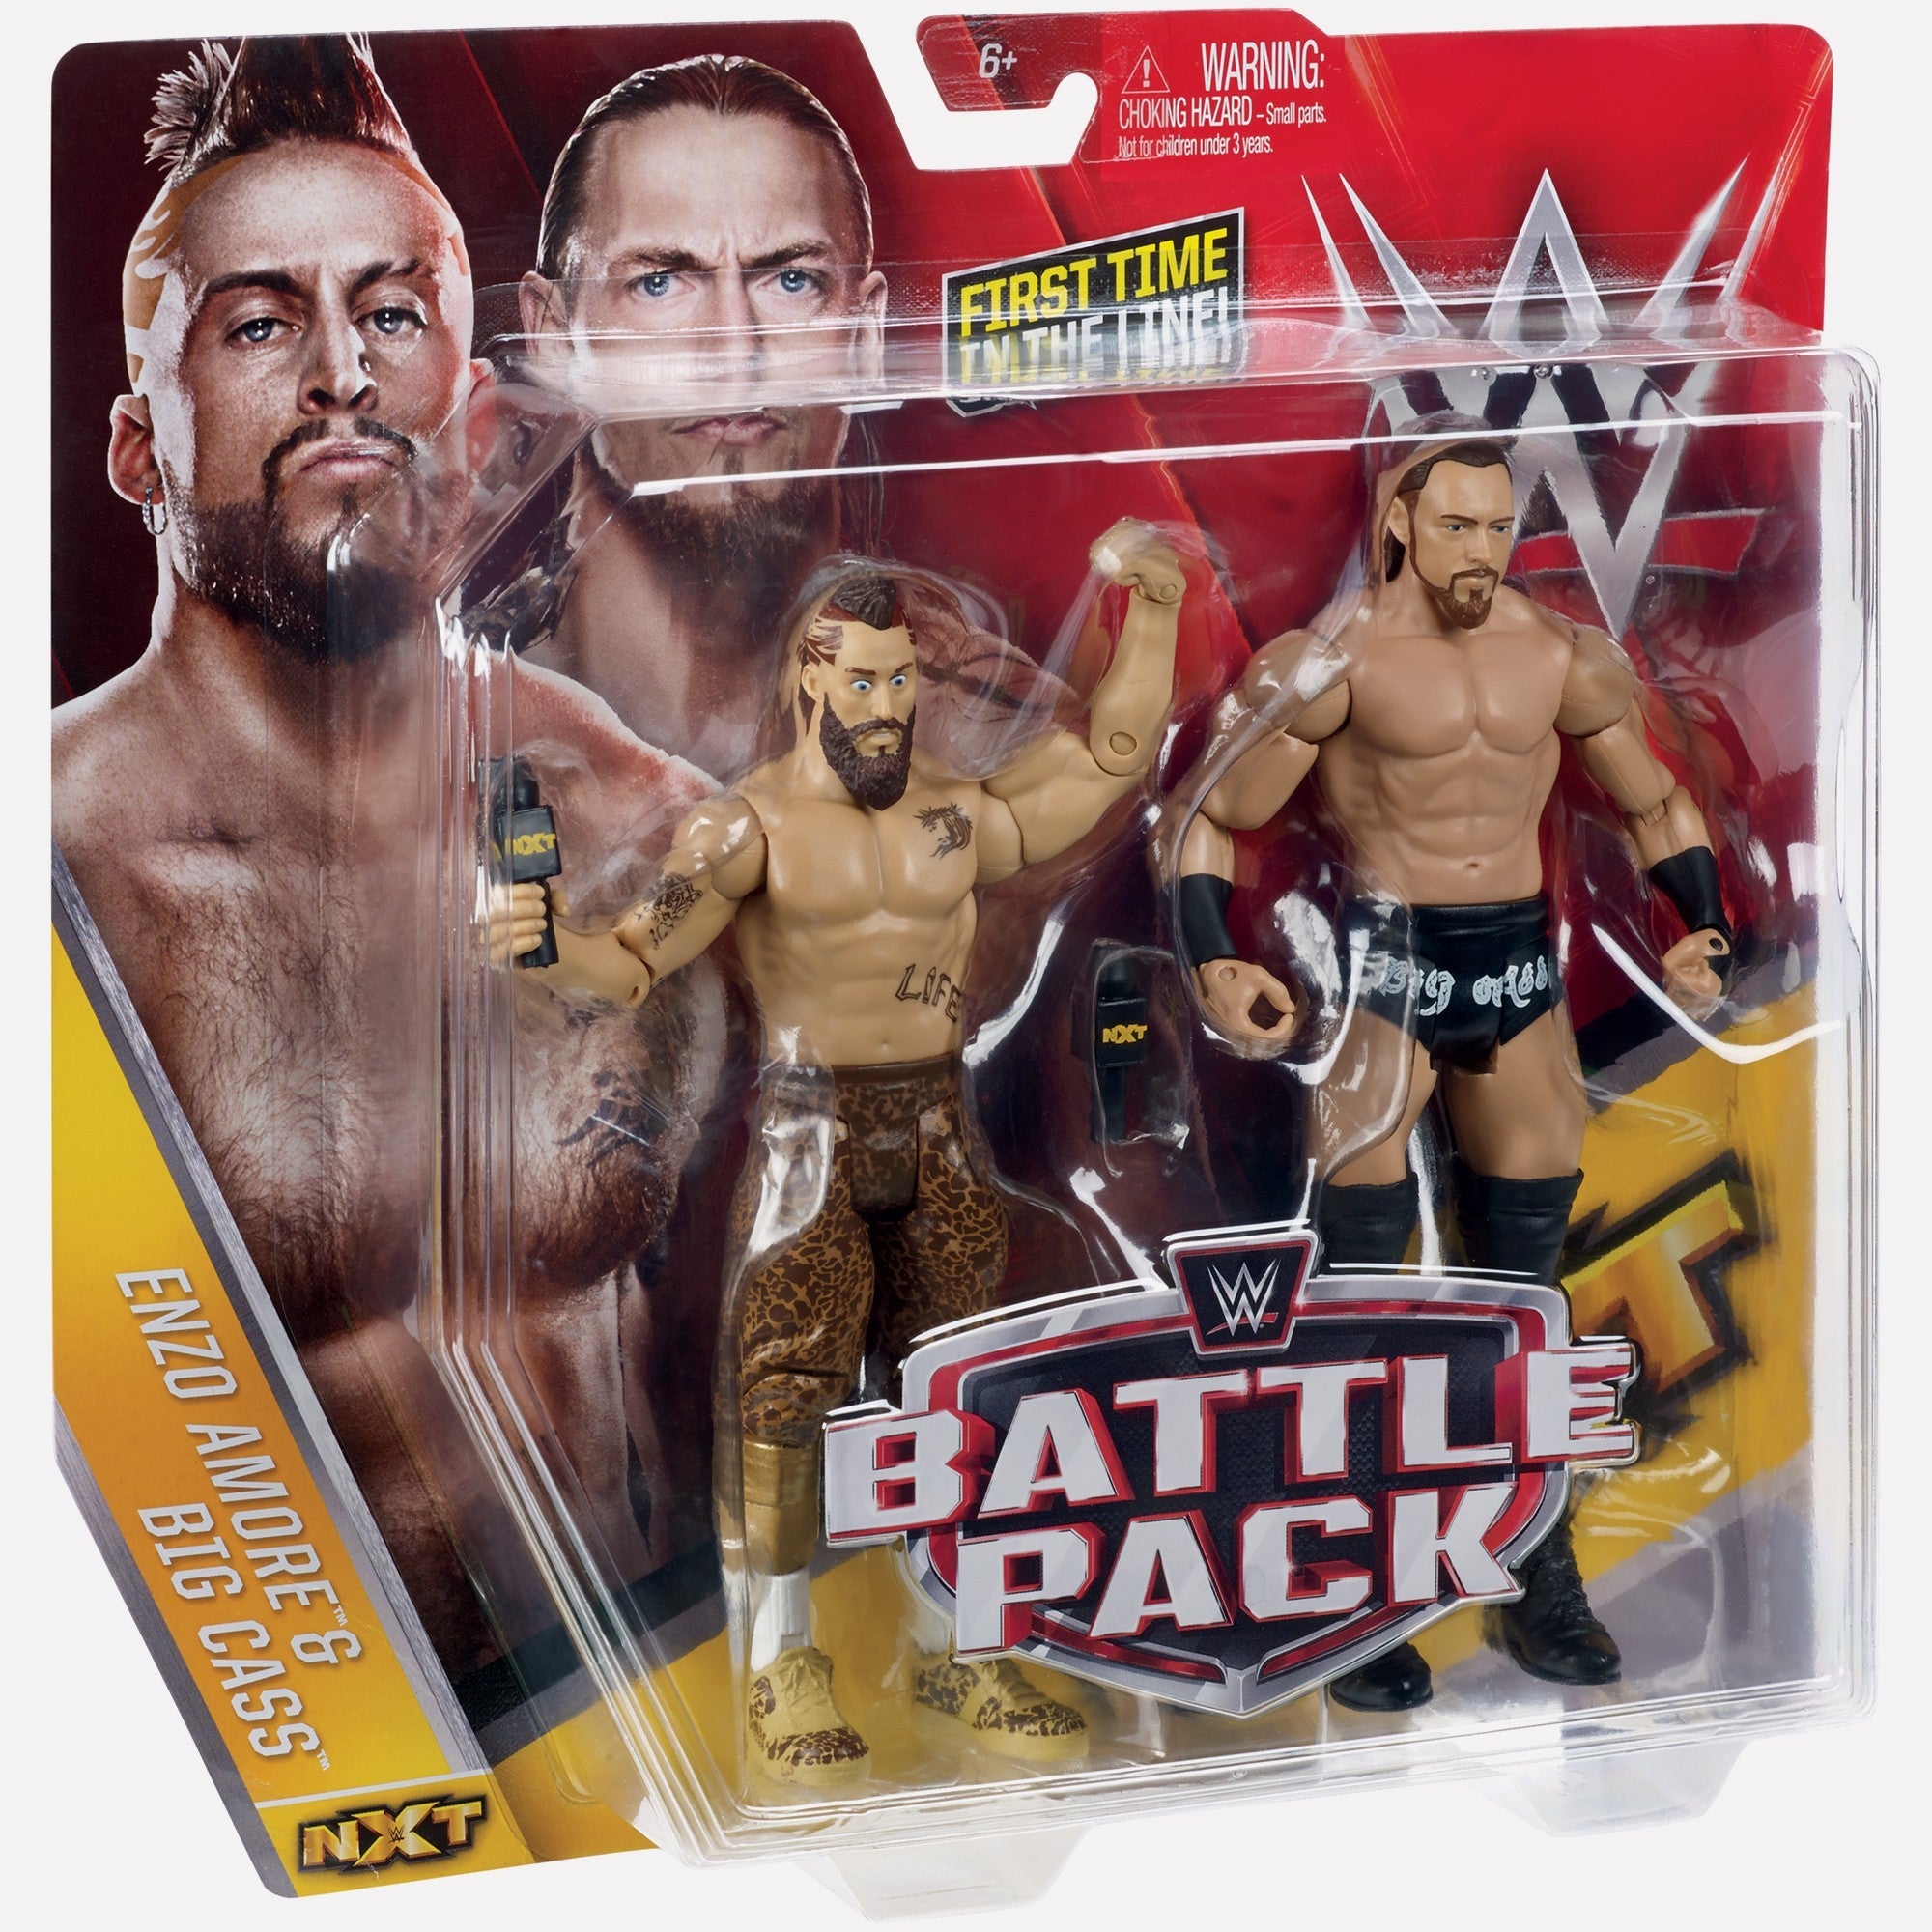 Mattel WWE Enzo & AJ Styles Ultimate Fan Pack Proto Images! |  Wrestlingfigs.com WWE Figure Forums